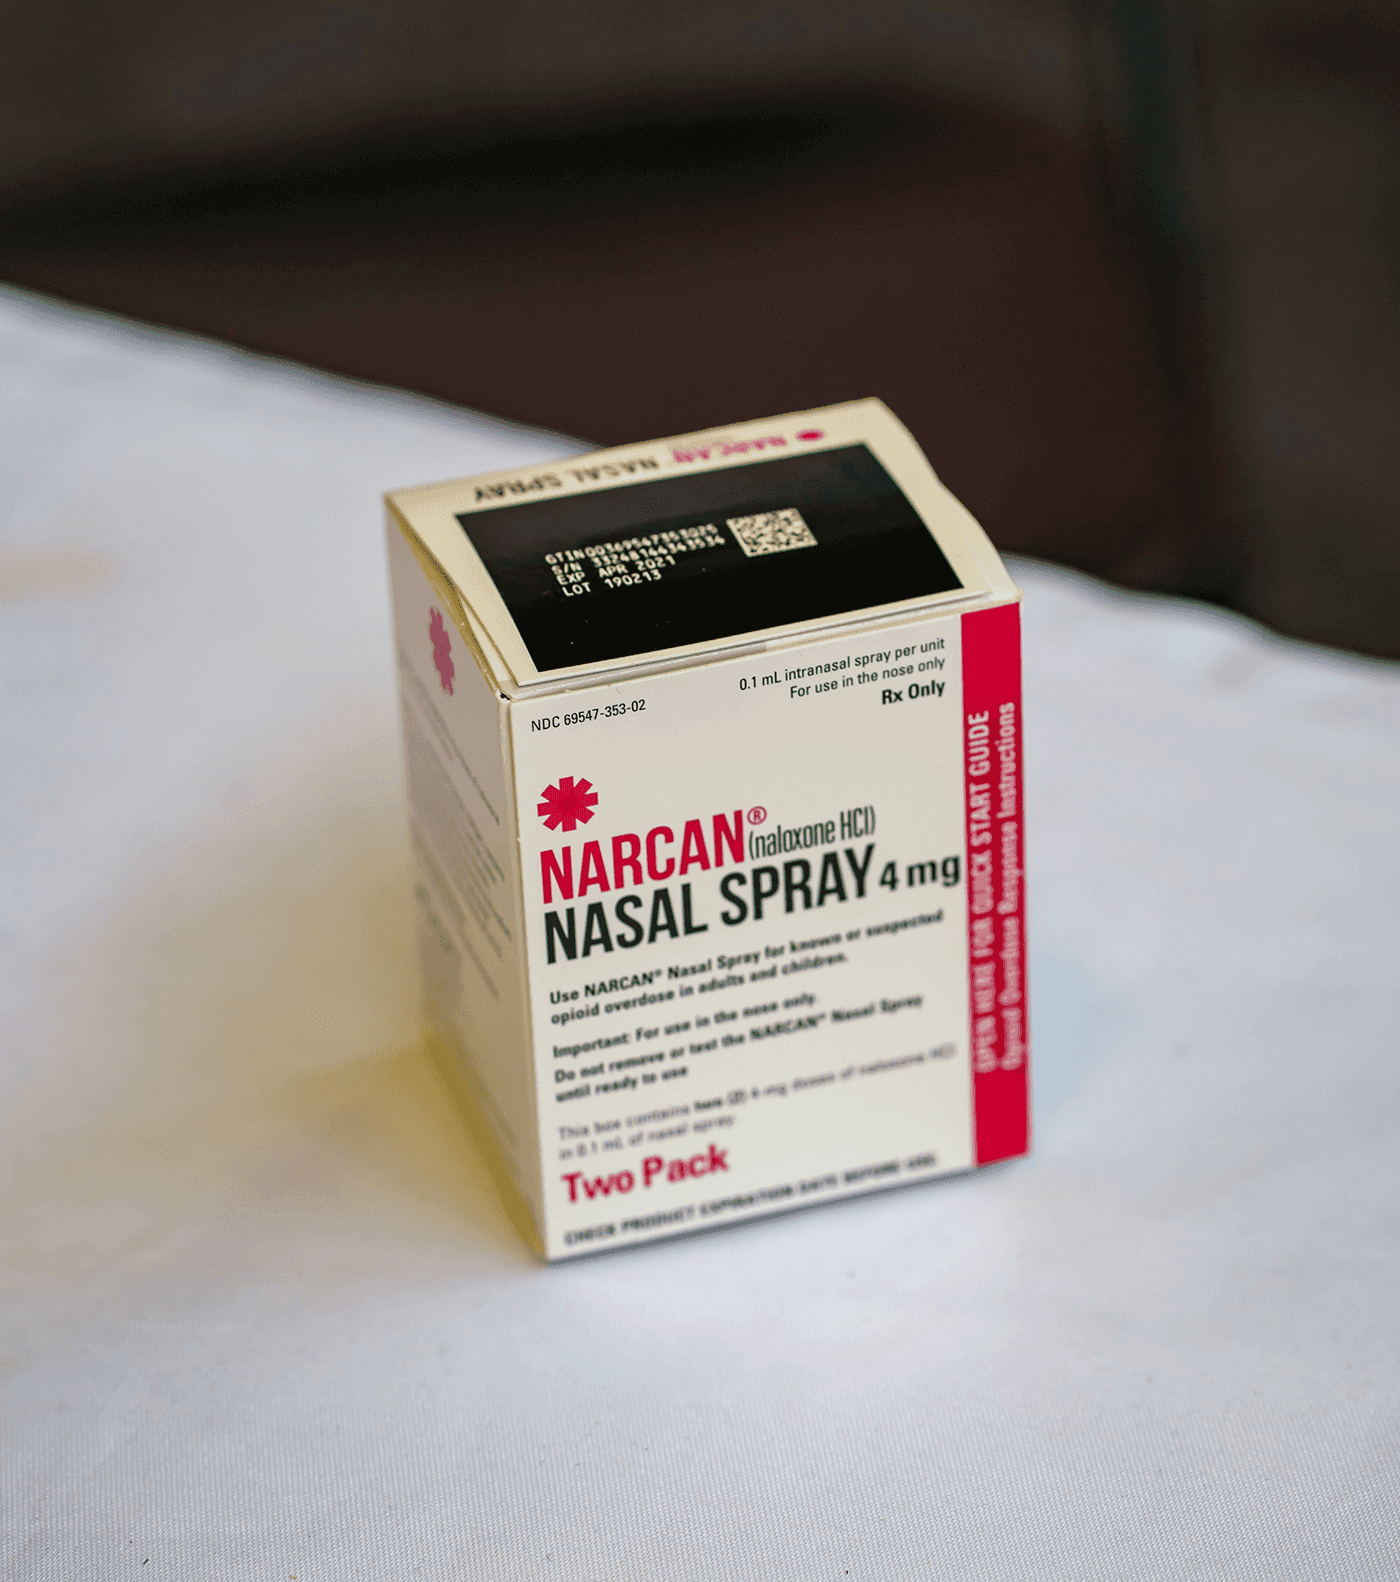 A Narcan (Naloxone) prescription box